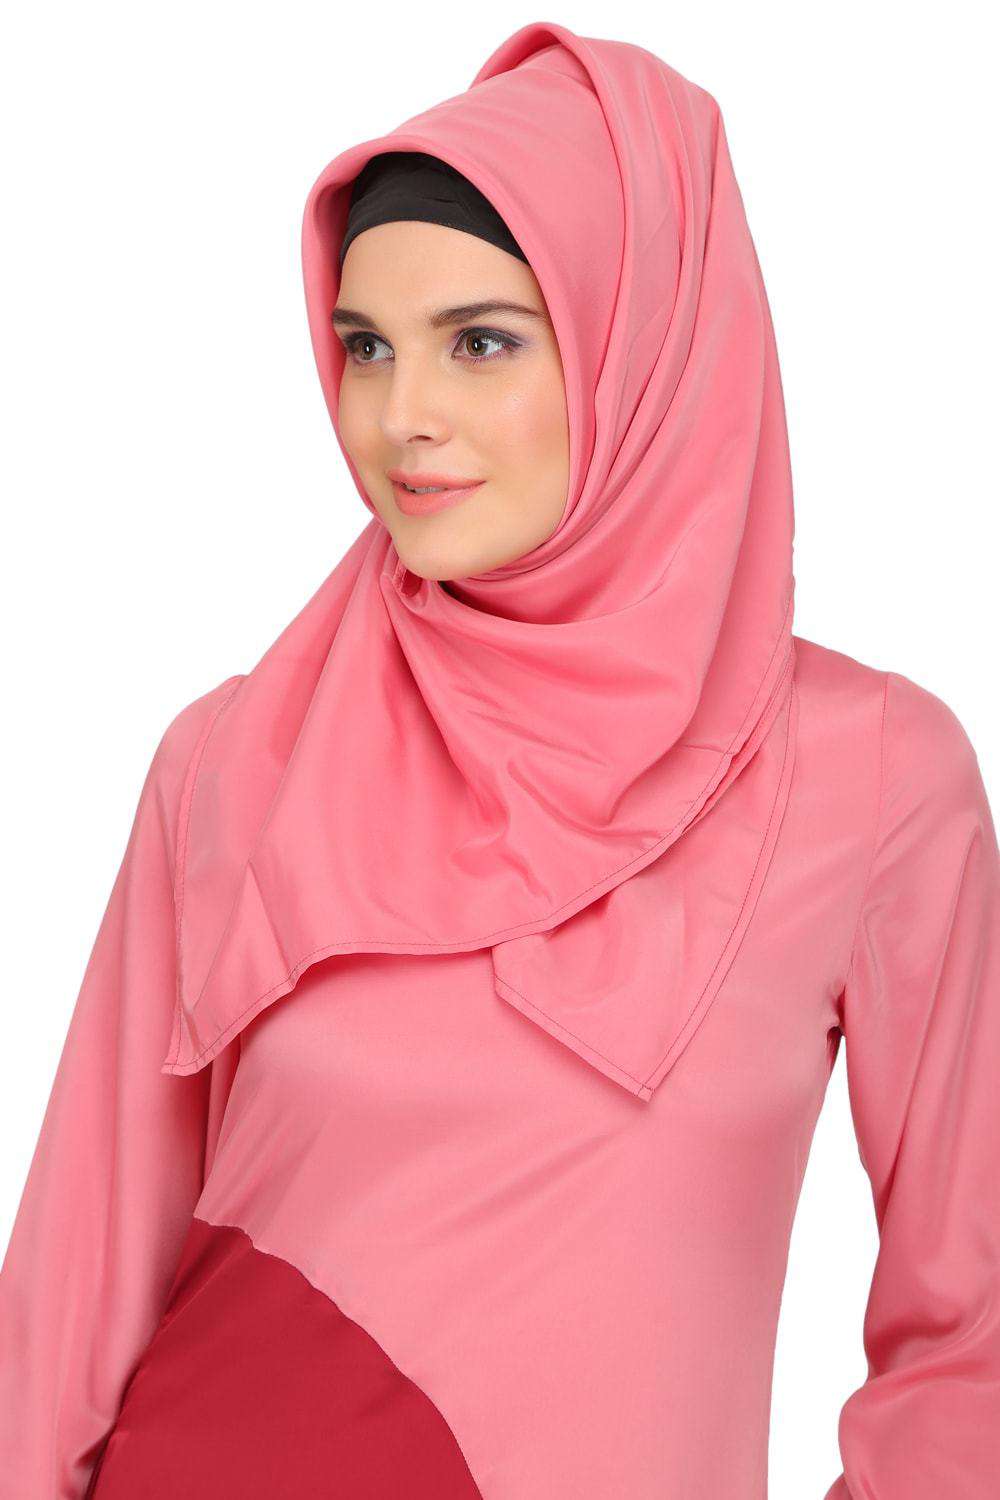 Minal Coral and Rose Pink Crepe Short Abaya Hijab